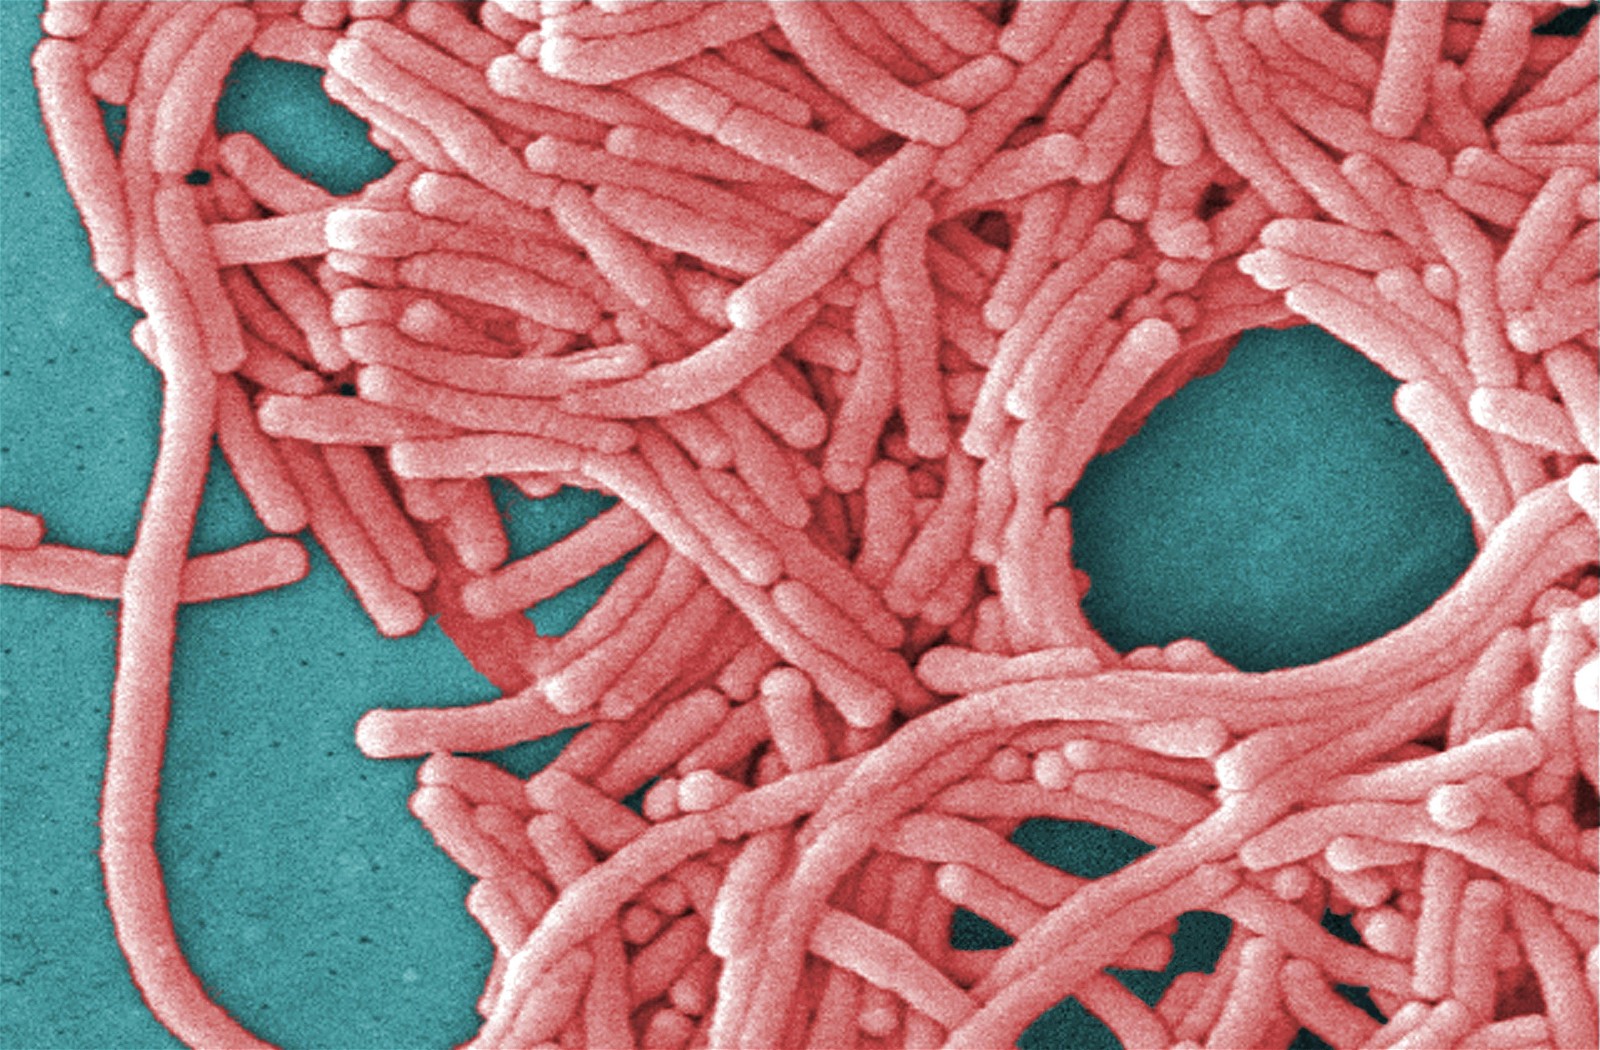 Legionnaires là tình trạng viêm phổi nghiêm trọng do virus Legionella gây ra